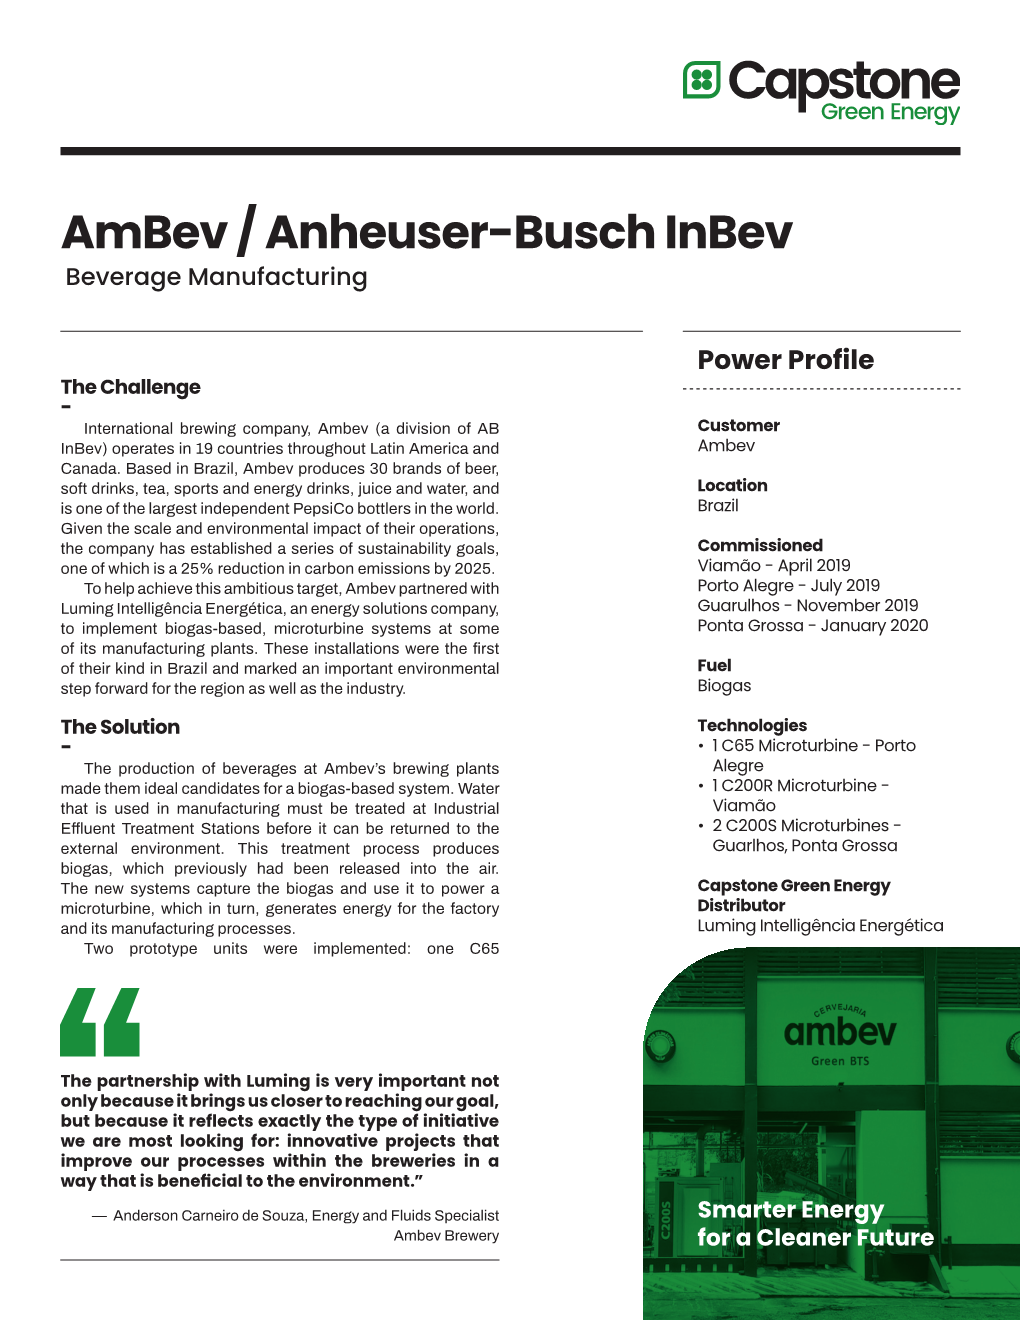 Ambev / Anheuser-Busch Inbev Beverage Manufacturing